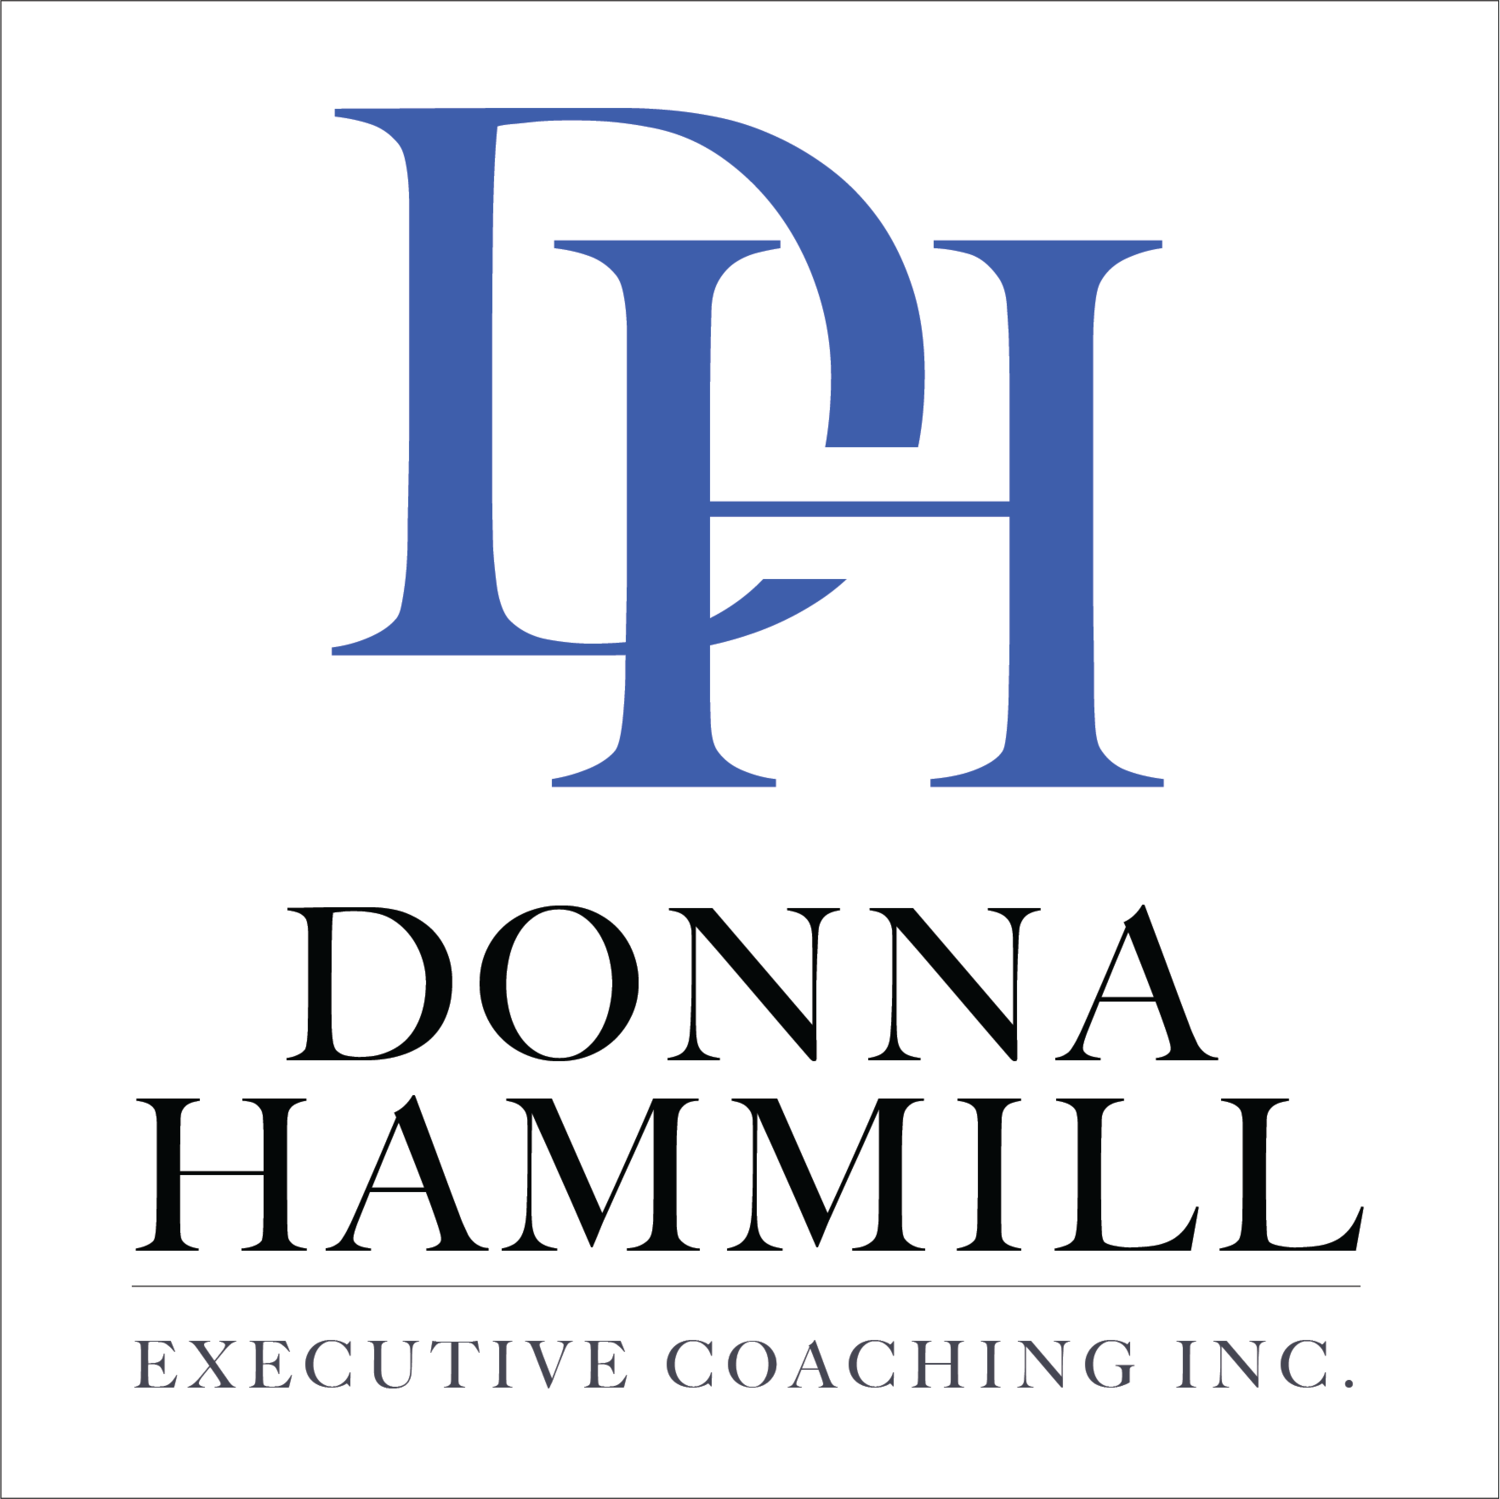 DHC Executive Coaching Inc.